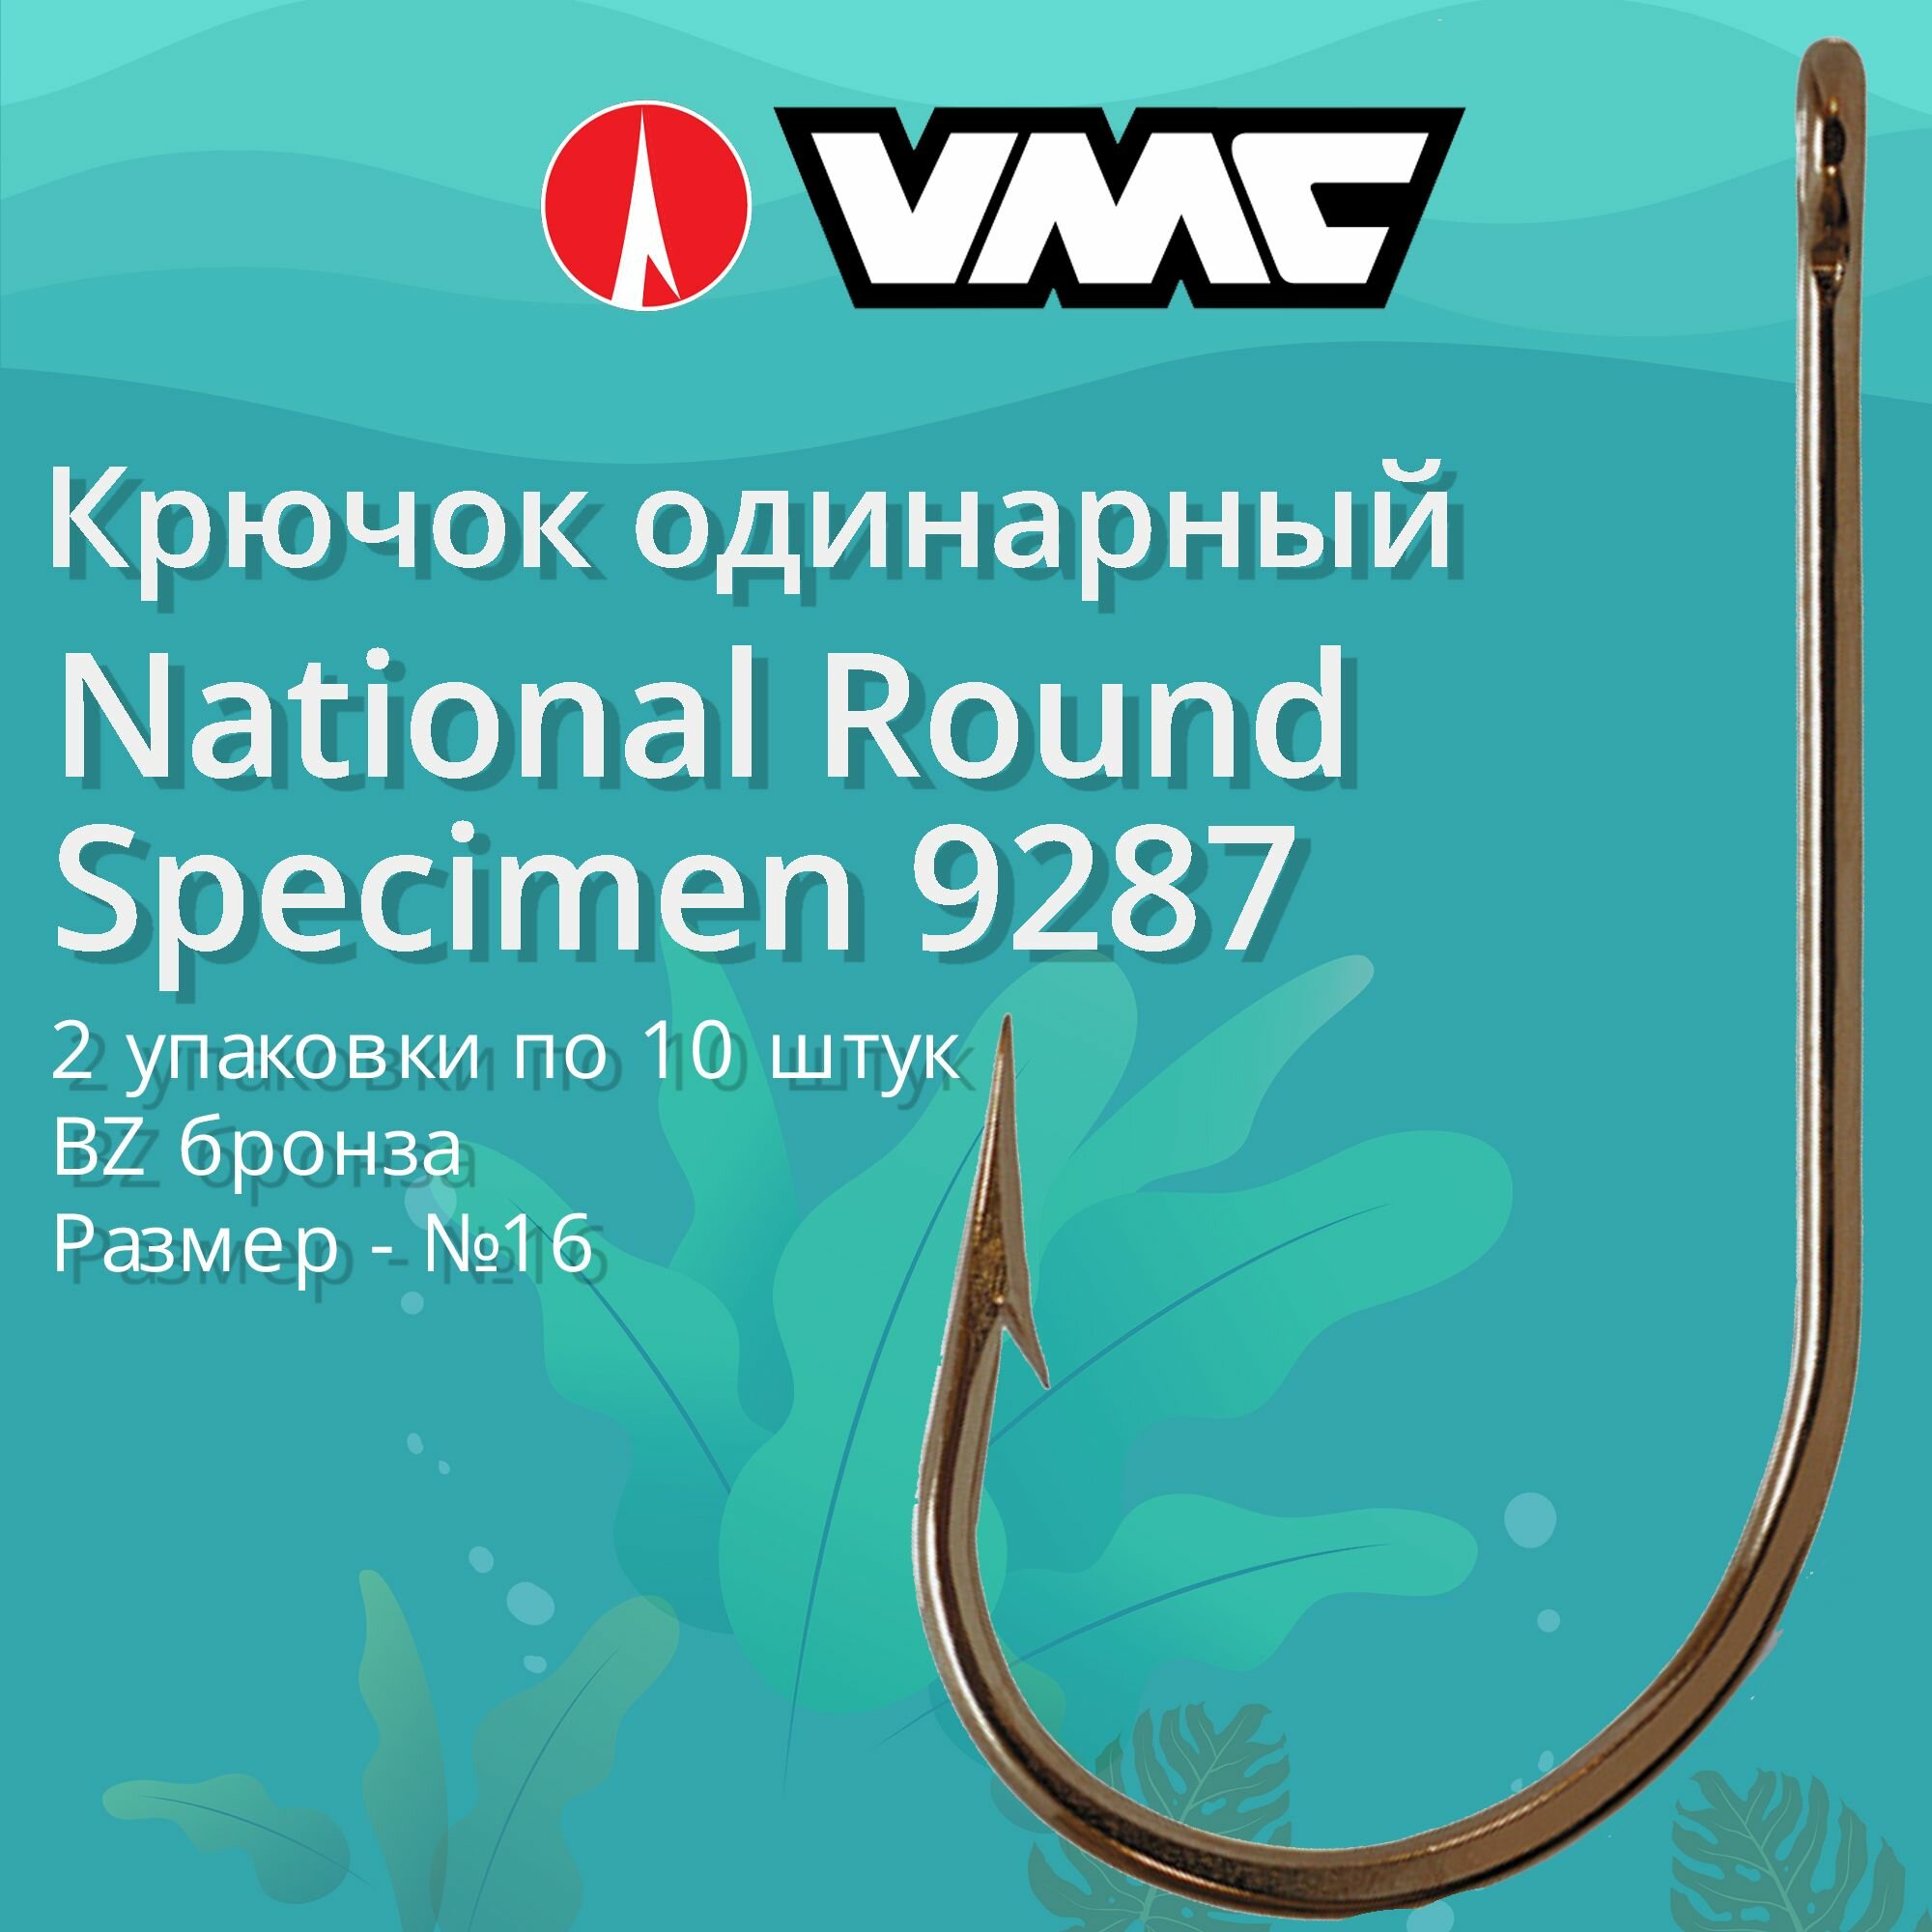 Крючки для рыбалки (одинарный) VMC National Round Specimen 9287 BZ (бронза) №16 2 упаковки по 10 штук